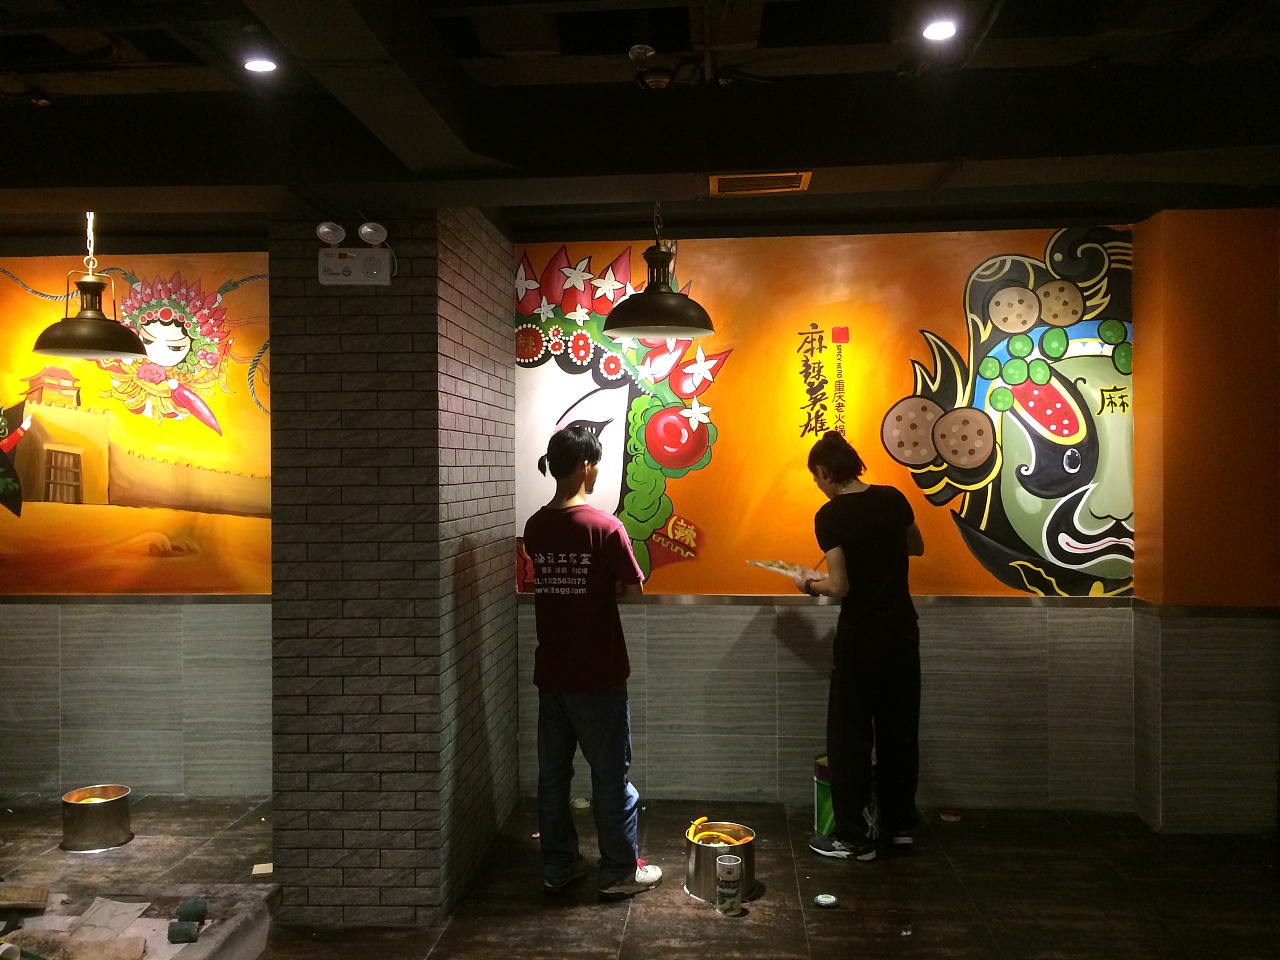 珠海兰埔手绘墙 麻辣英雄火锅店墙绘。|纯艺术